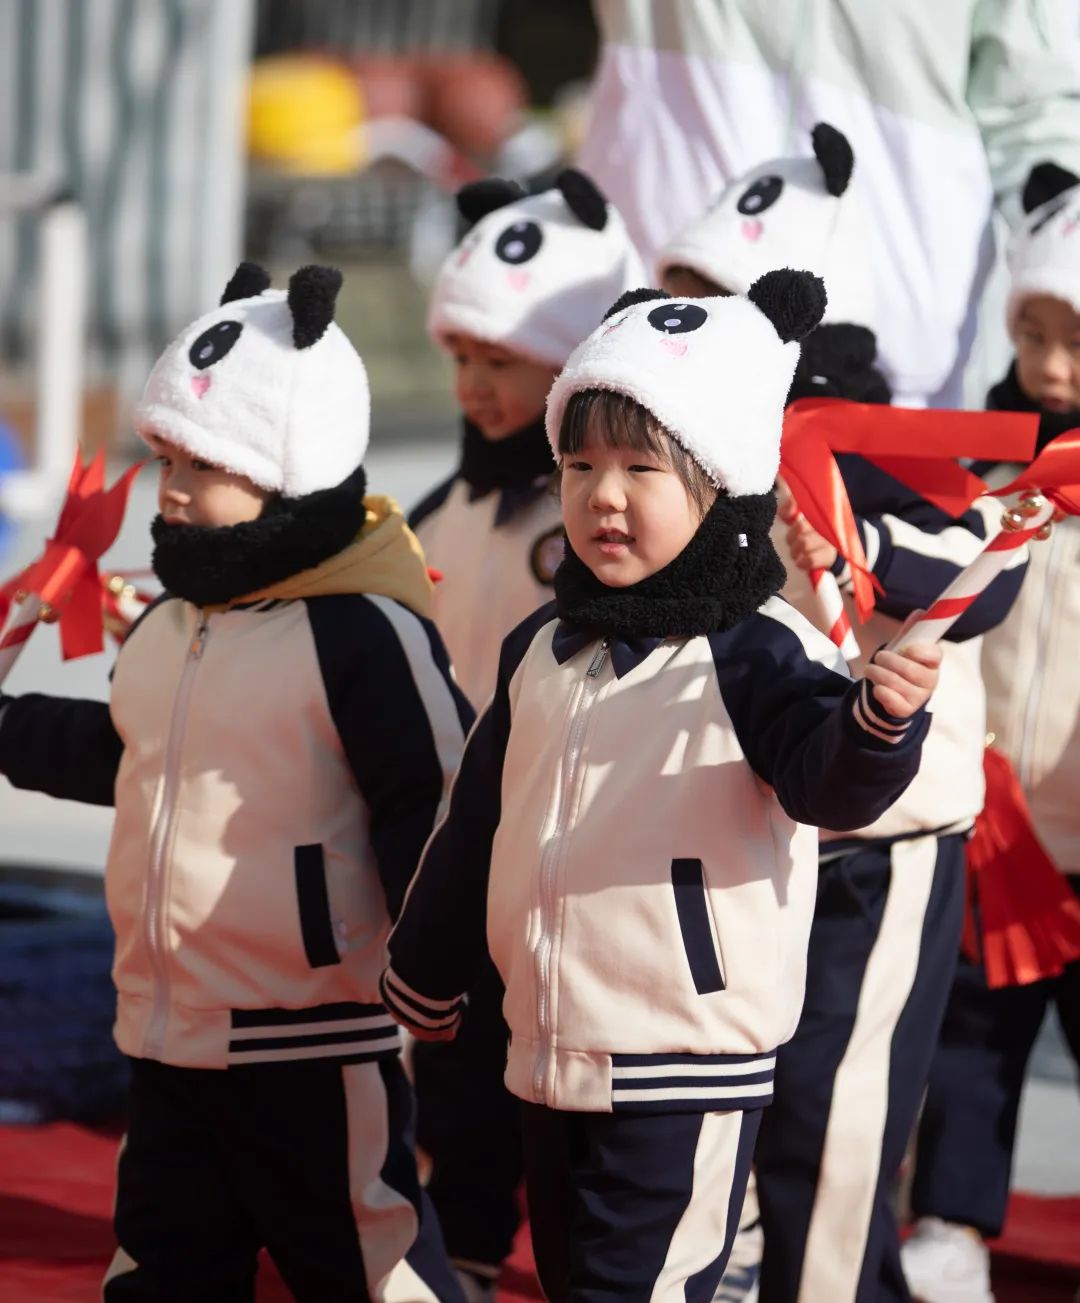 萌娃带你向前冲!南京这所幼儿园运动会欢乐无限!